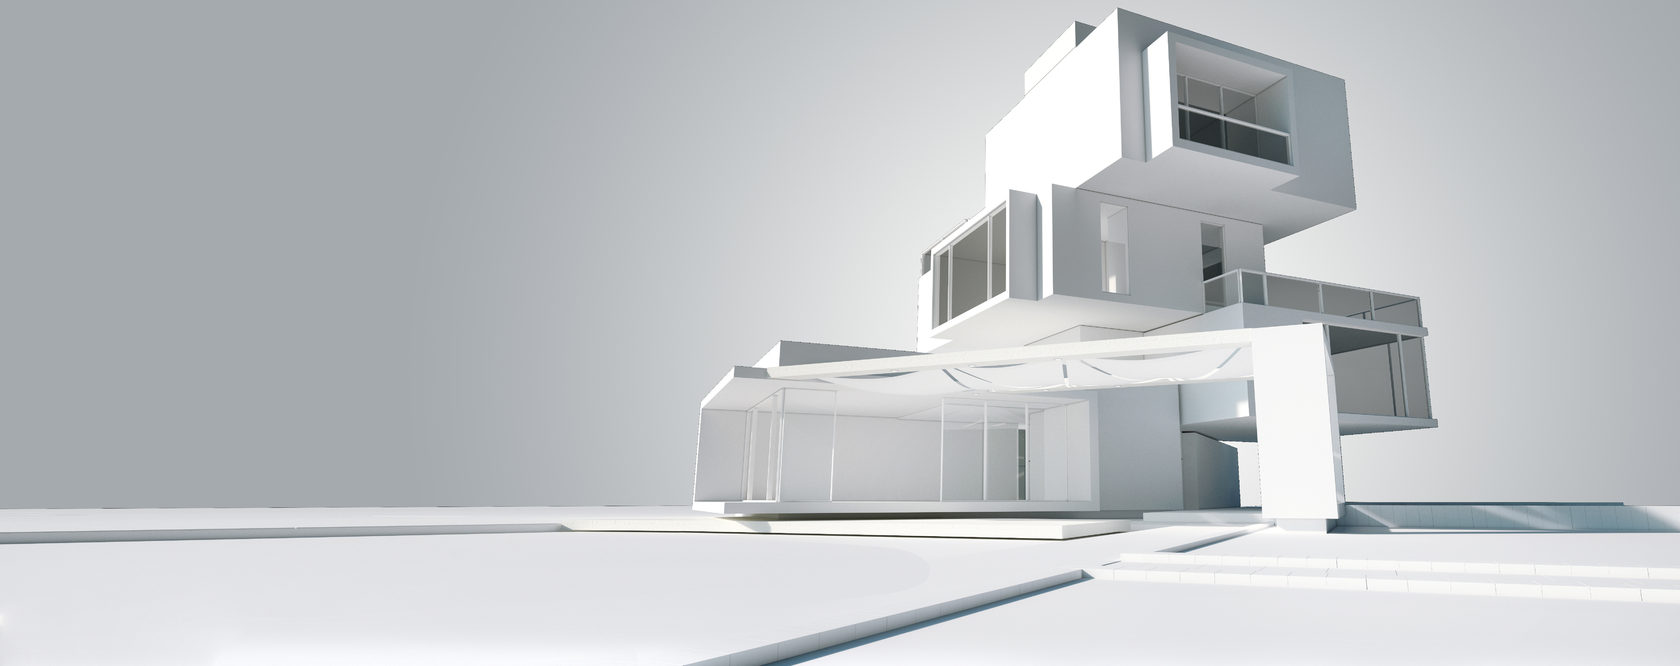 Blog de arquitectura Haus arquitectos